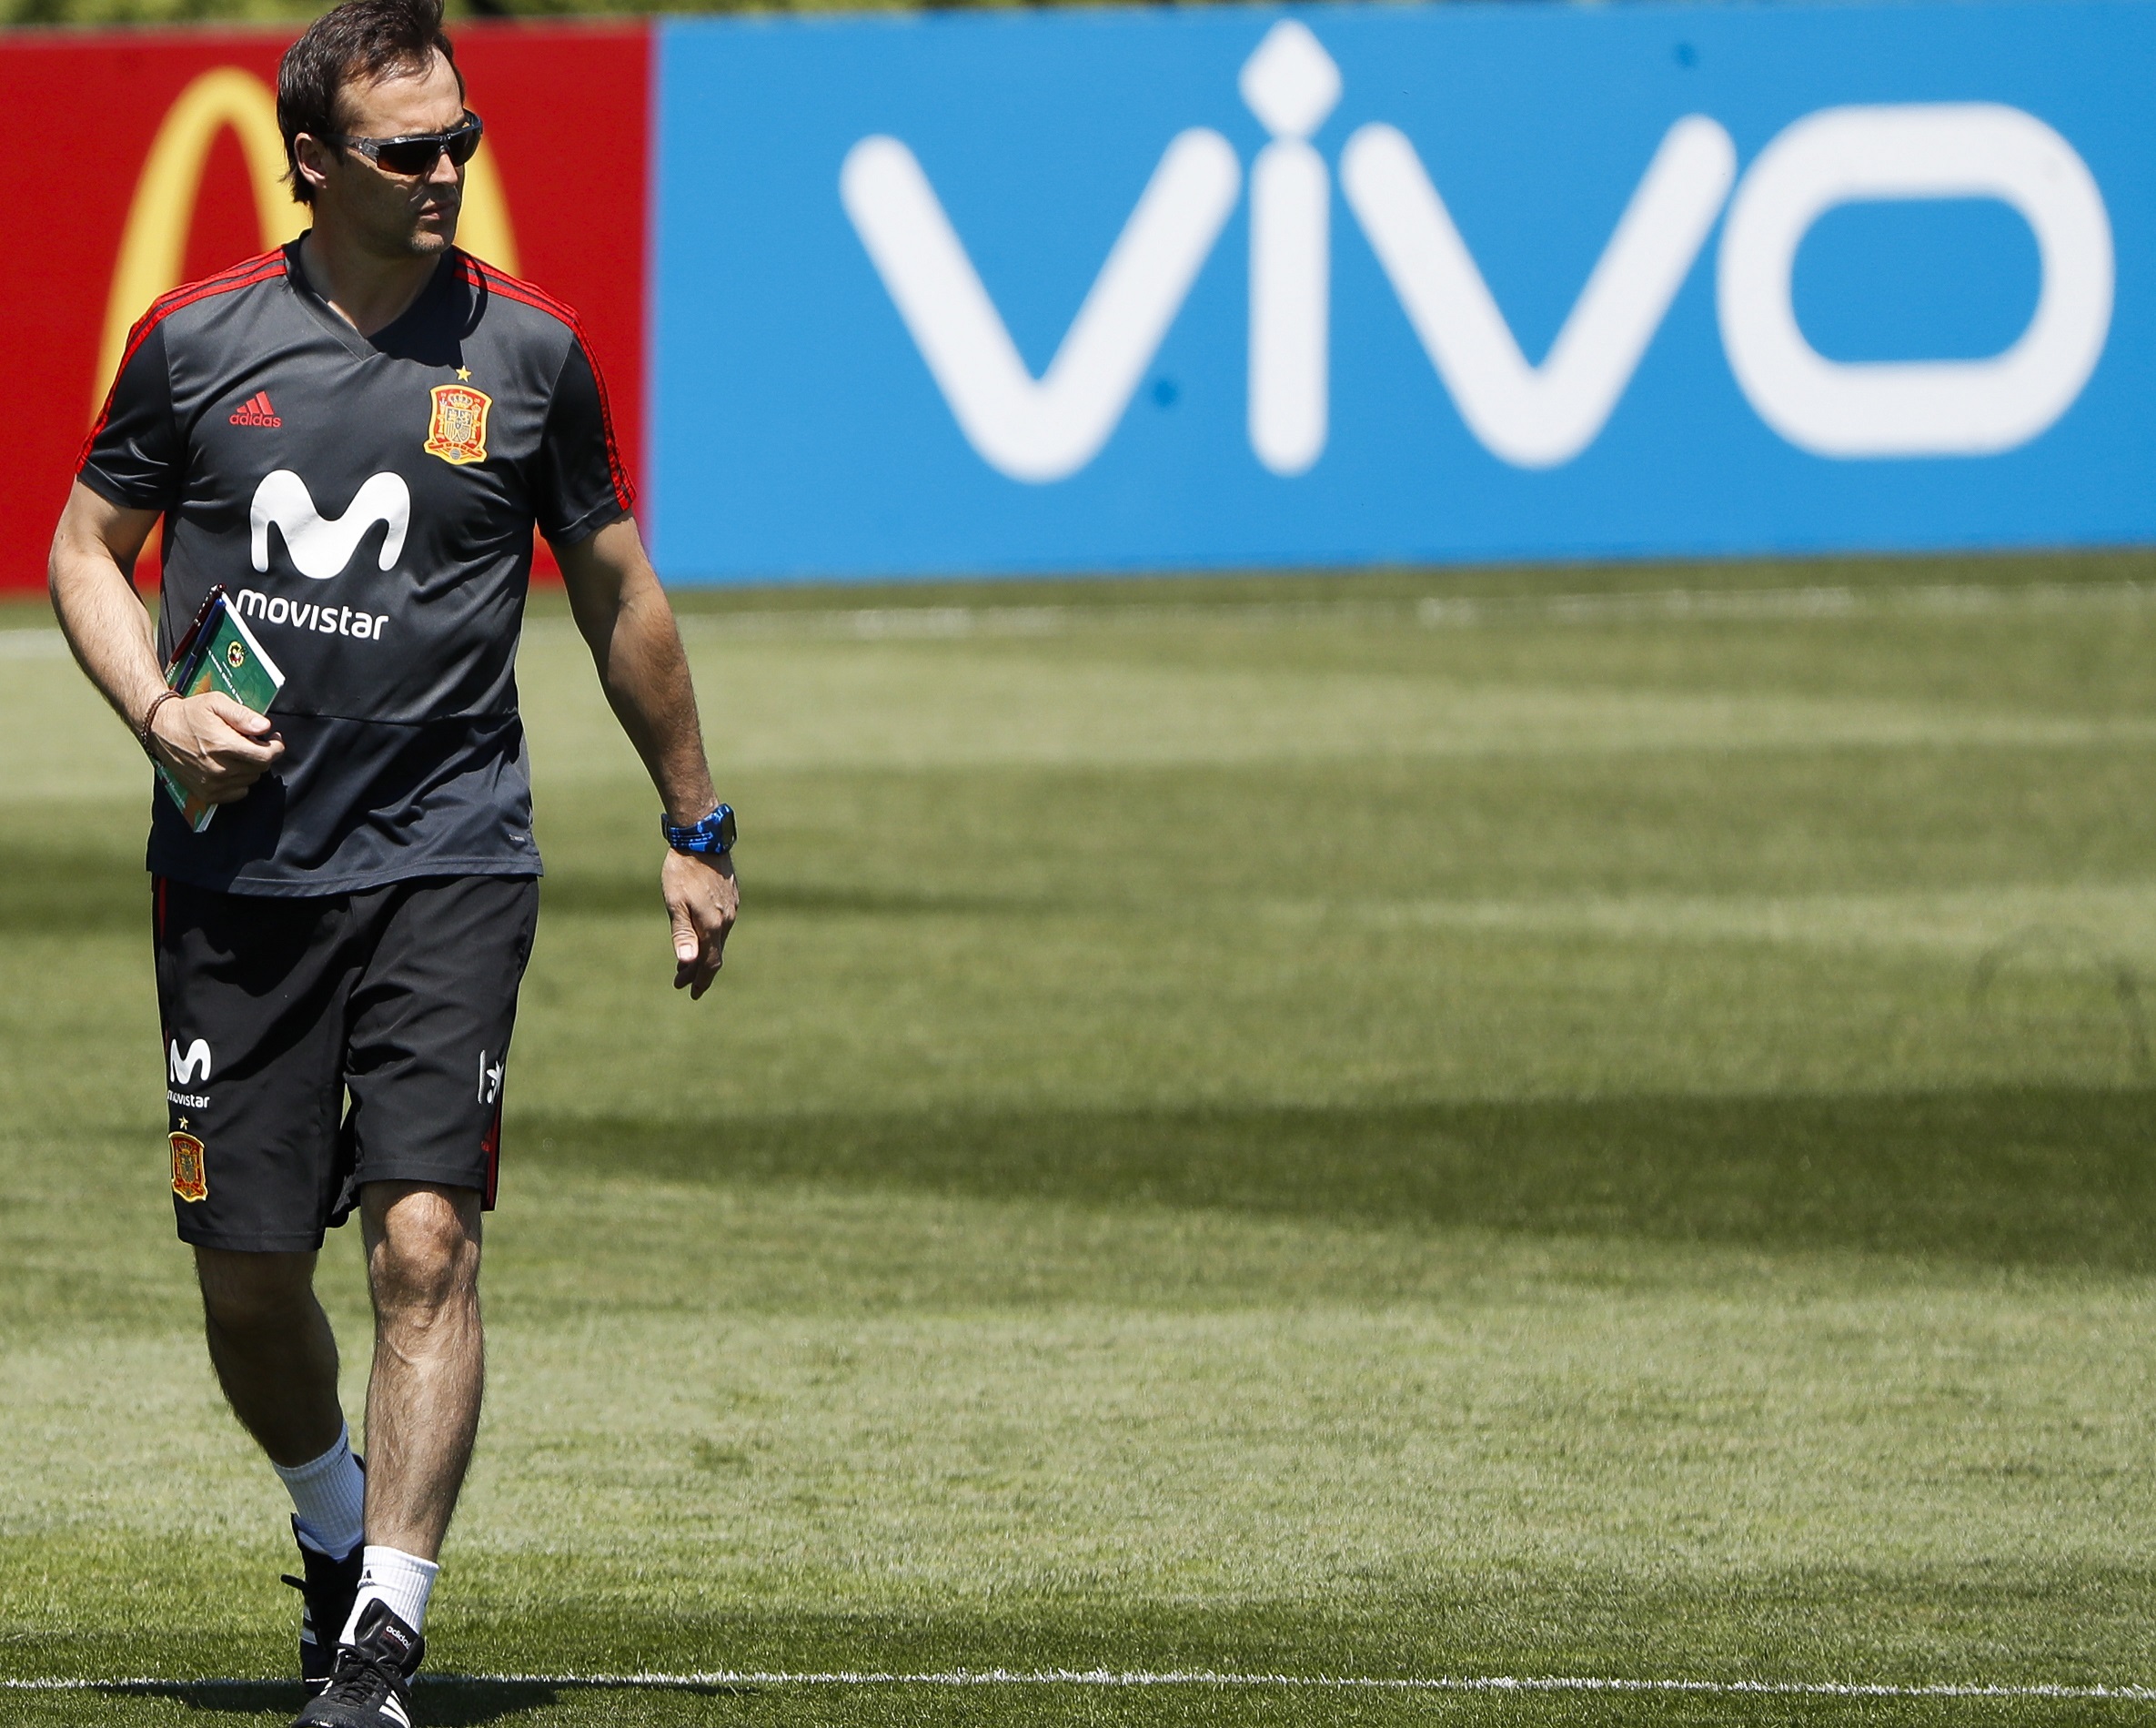 Spanje ontslaat bondscoach vlak voor WK vanwege overstap naa... - De